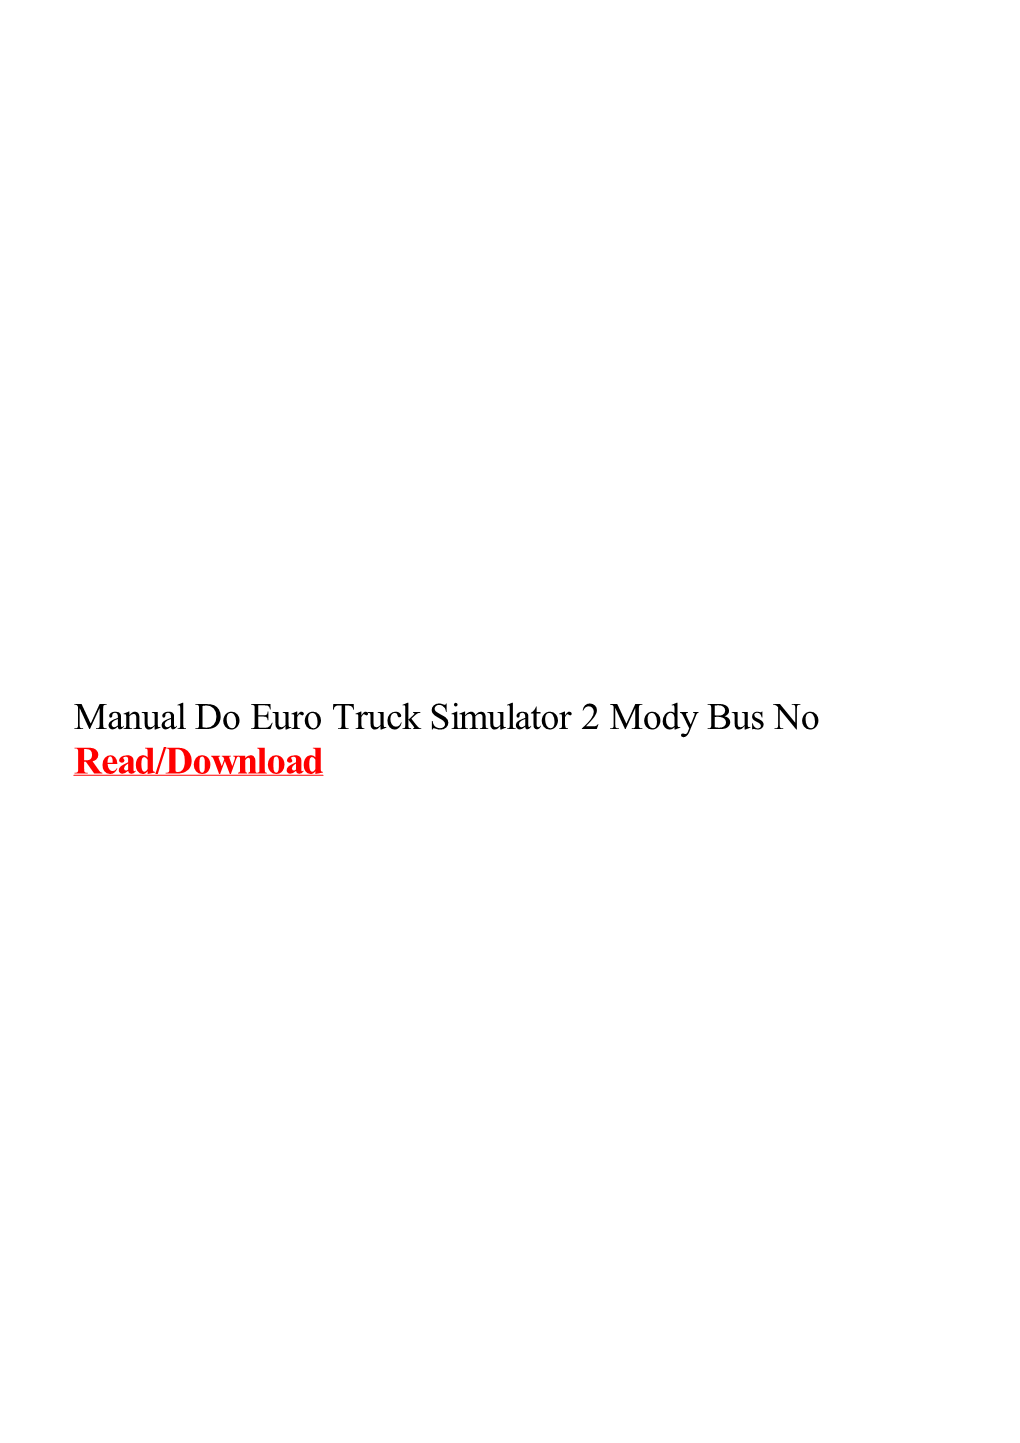 Manual Do Euro Truck Simulator 2 Mody Bus No.Pdf